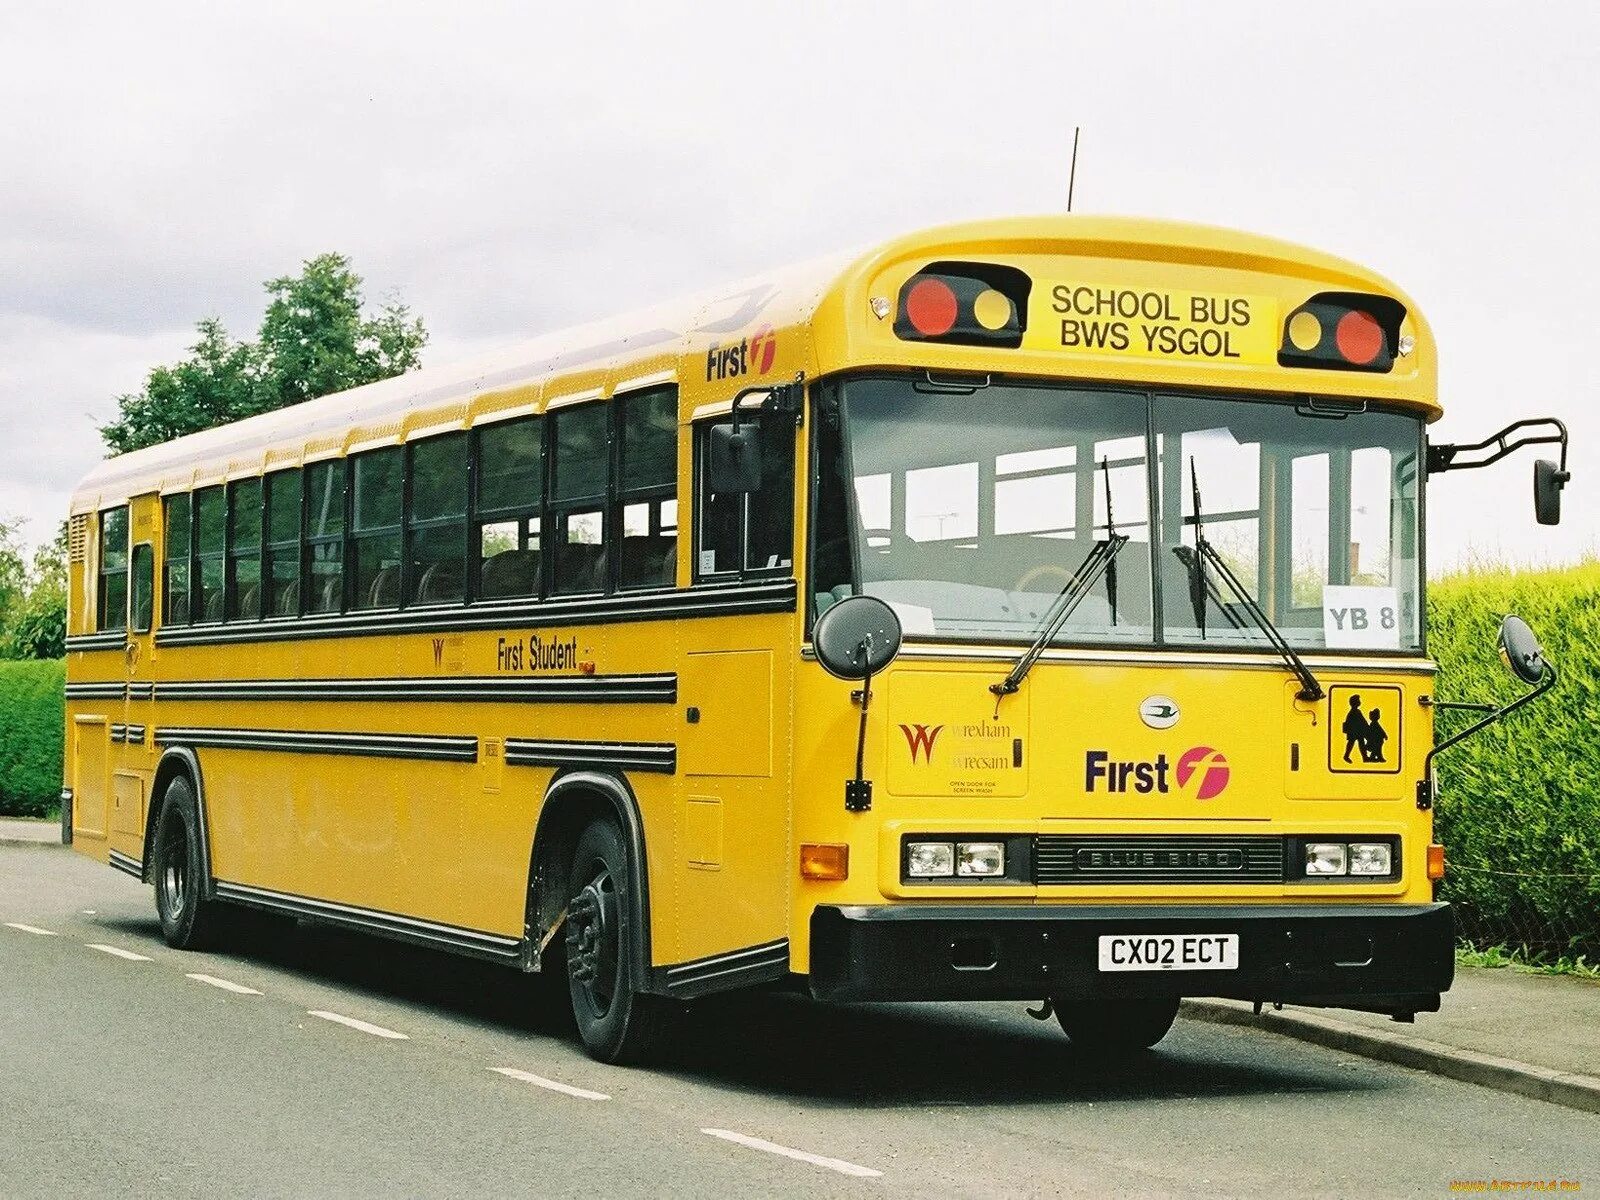 Включи машина автобус. Машины автобусы. Автобус и автомобиль. 2002 Год автобус. Машина школьный автобус.